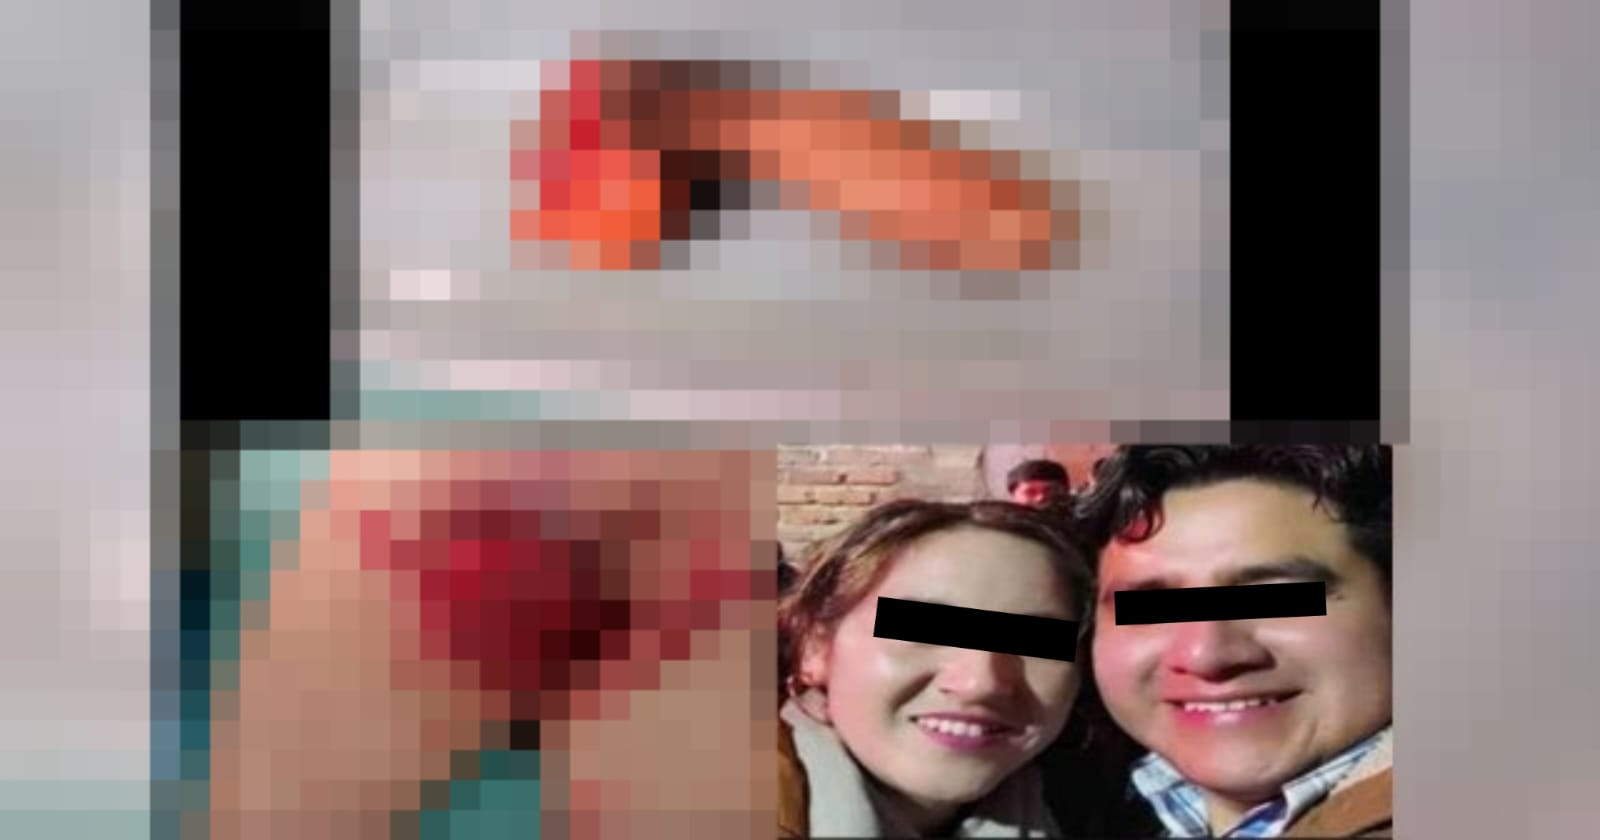 [IMAGENES SENSIBLES] Mujer le corta el pene a su pareja por supuesta infidelidad: Perú